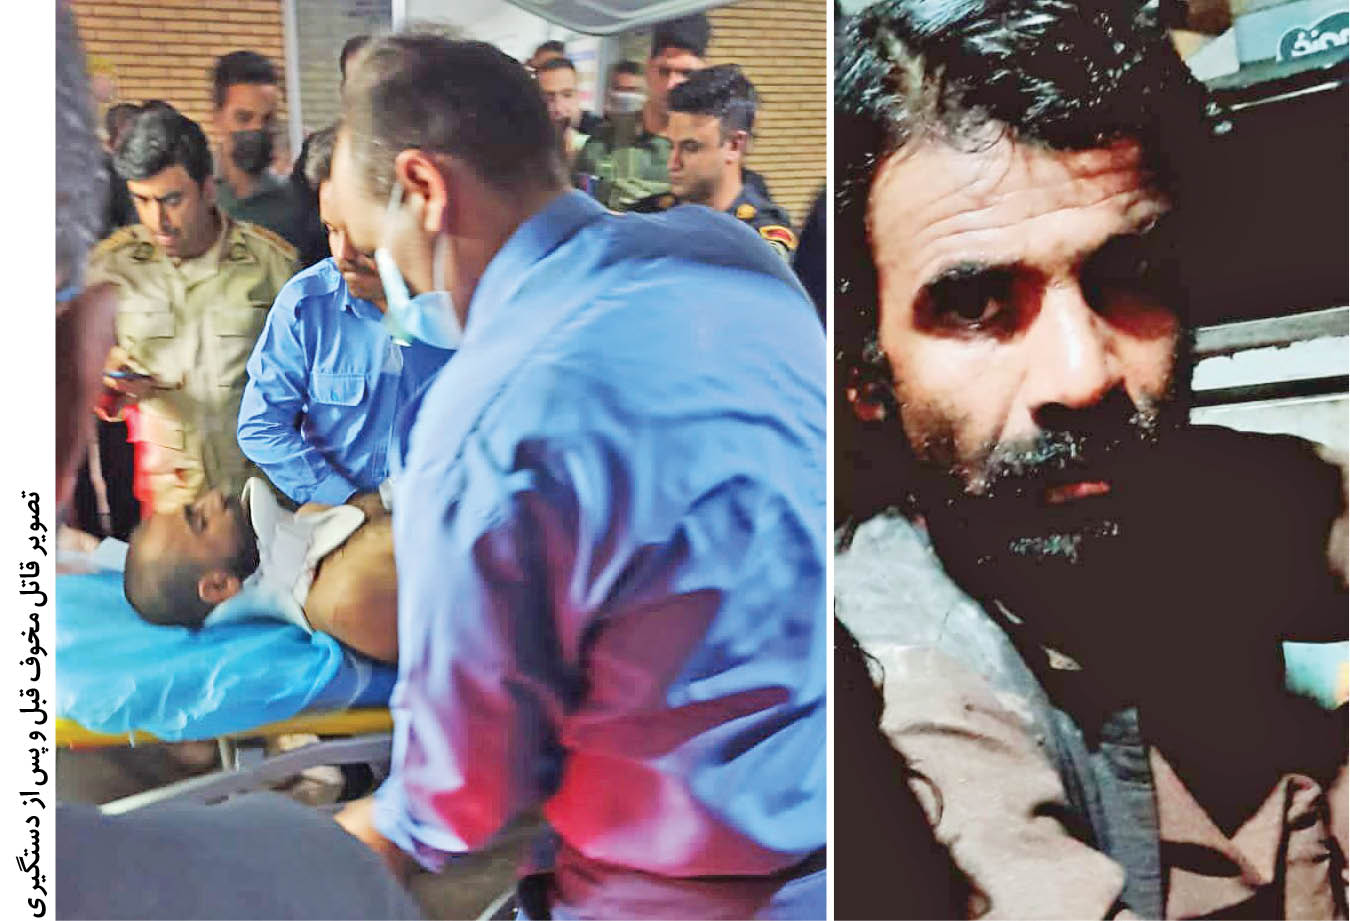 مرد افغان که از زندان افغانستان گریخته بود، در جنایتی هولناک در شهرستان رفسنجان 6افغان و 4ایرانی را به قتل رساند